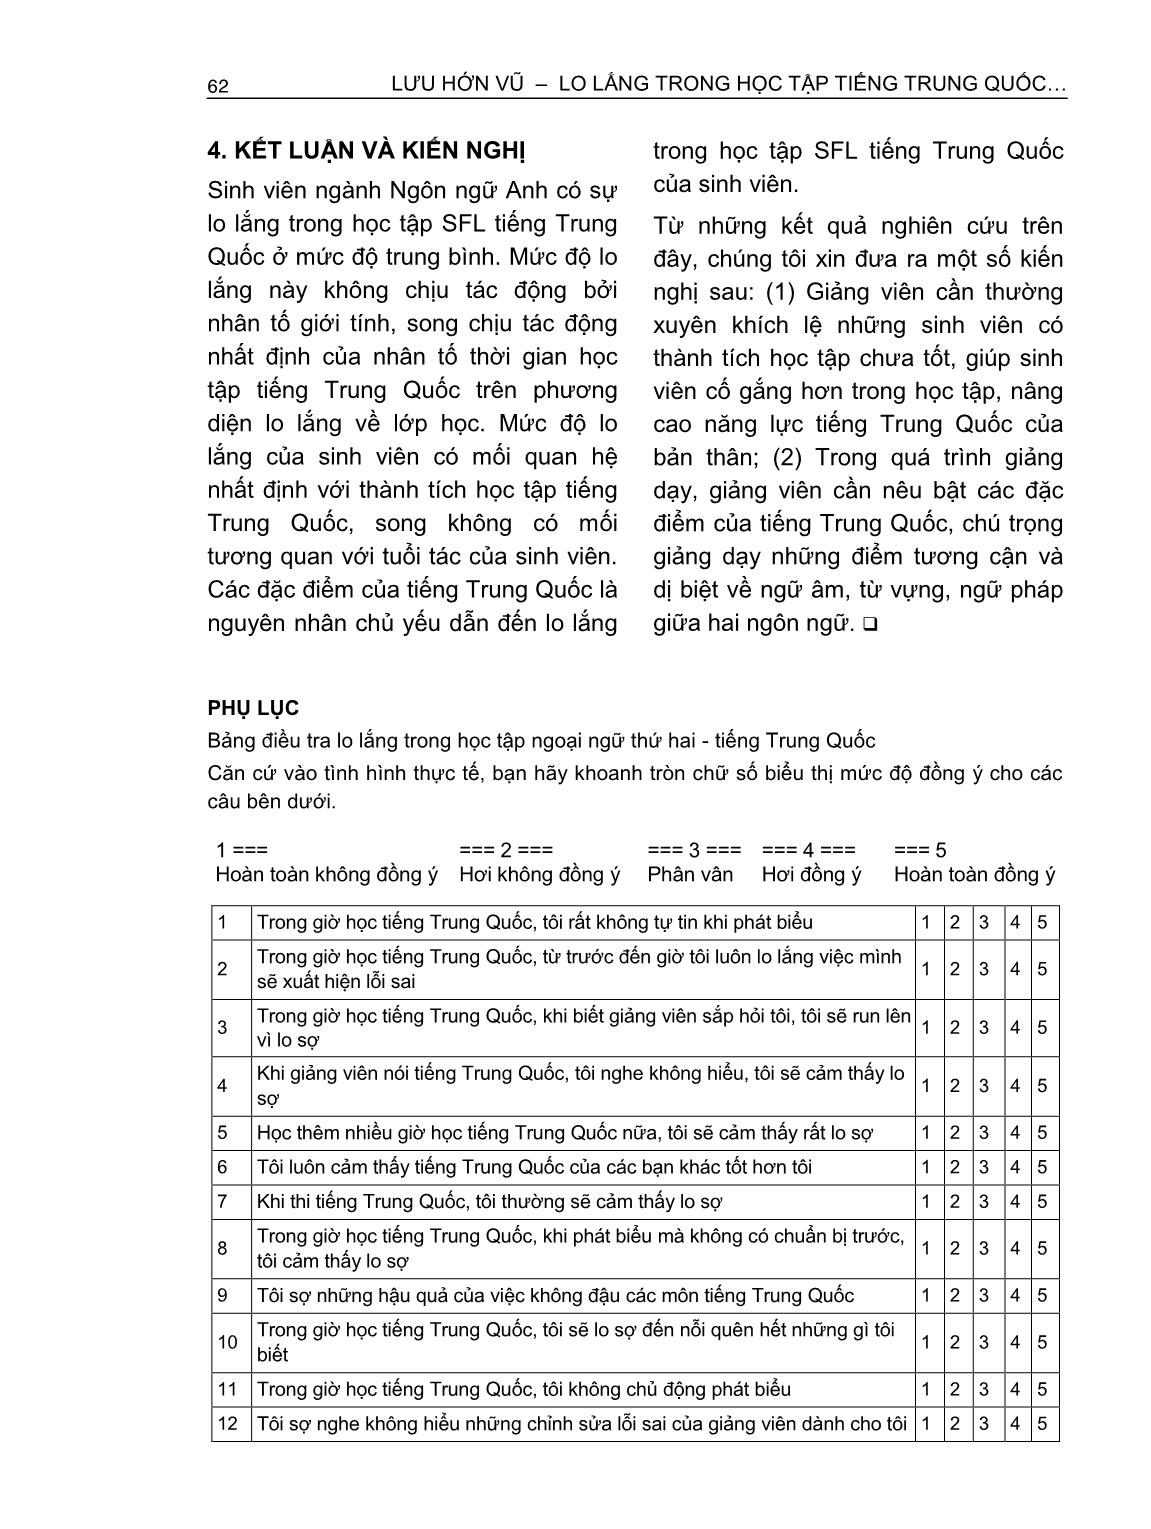 Lo lắng trong học tập tiếng Trung Quốc - Ngoại ngữ thứ hai của sinh viên ngành Ngôn ngữ anh (Trường hợp Trường Đại học Ngân hàng thành phố Hồ Chí Minh) trang 8